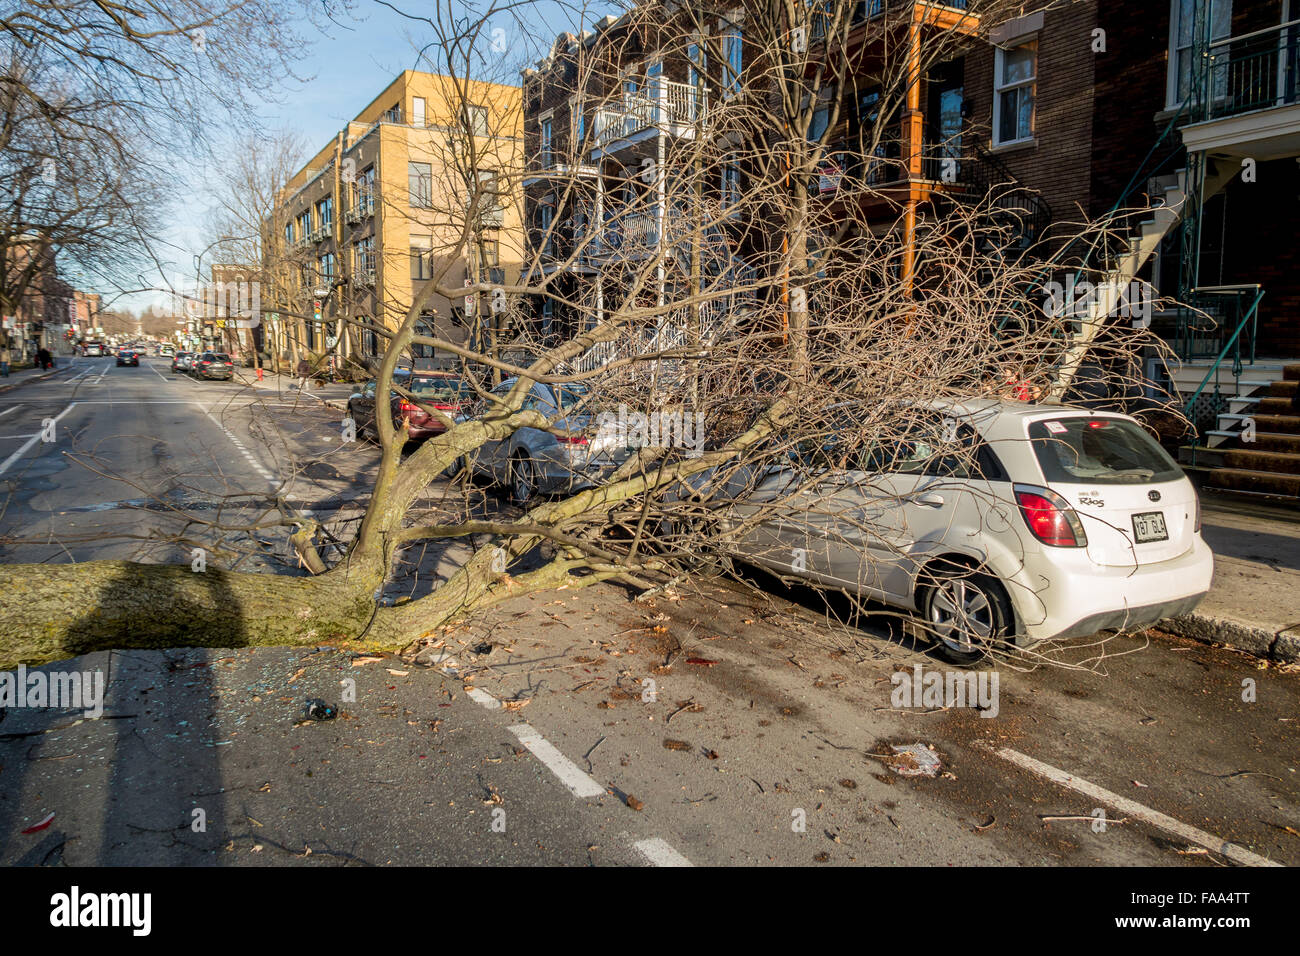 Montreal, Canada. 24 dicembre, 2015. un albero cade su una strada su una vettura come un risultato di forte vento laurier street in Montreal. Credito: marc bruxelle/alamy live news Foto Stock